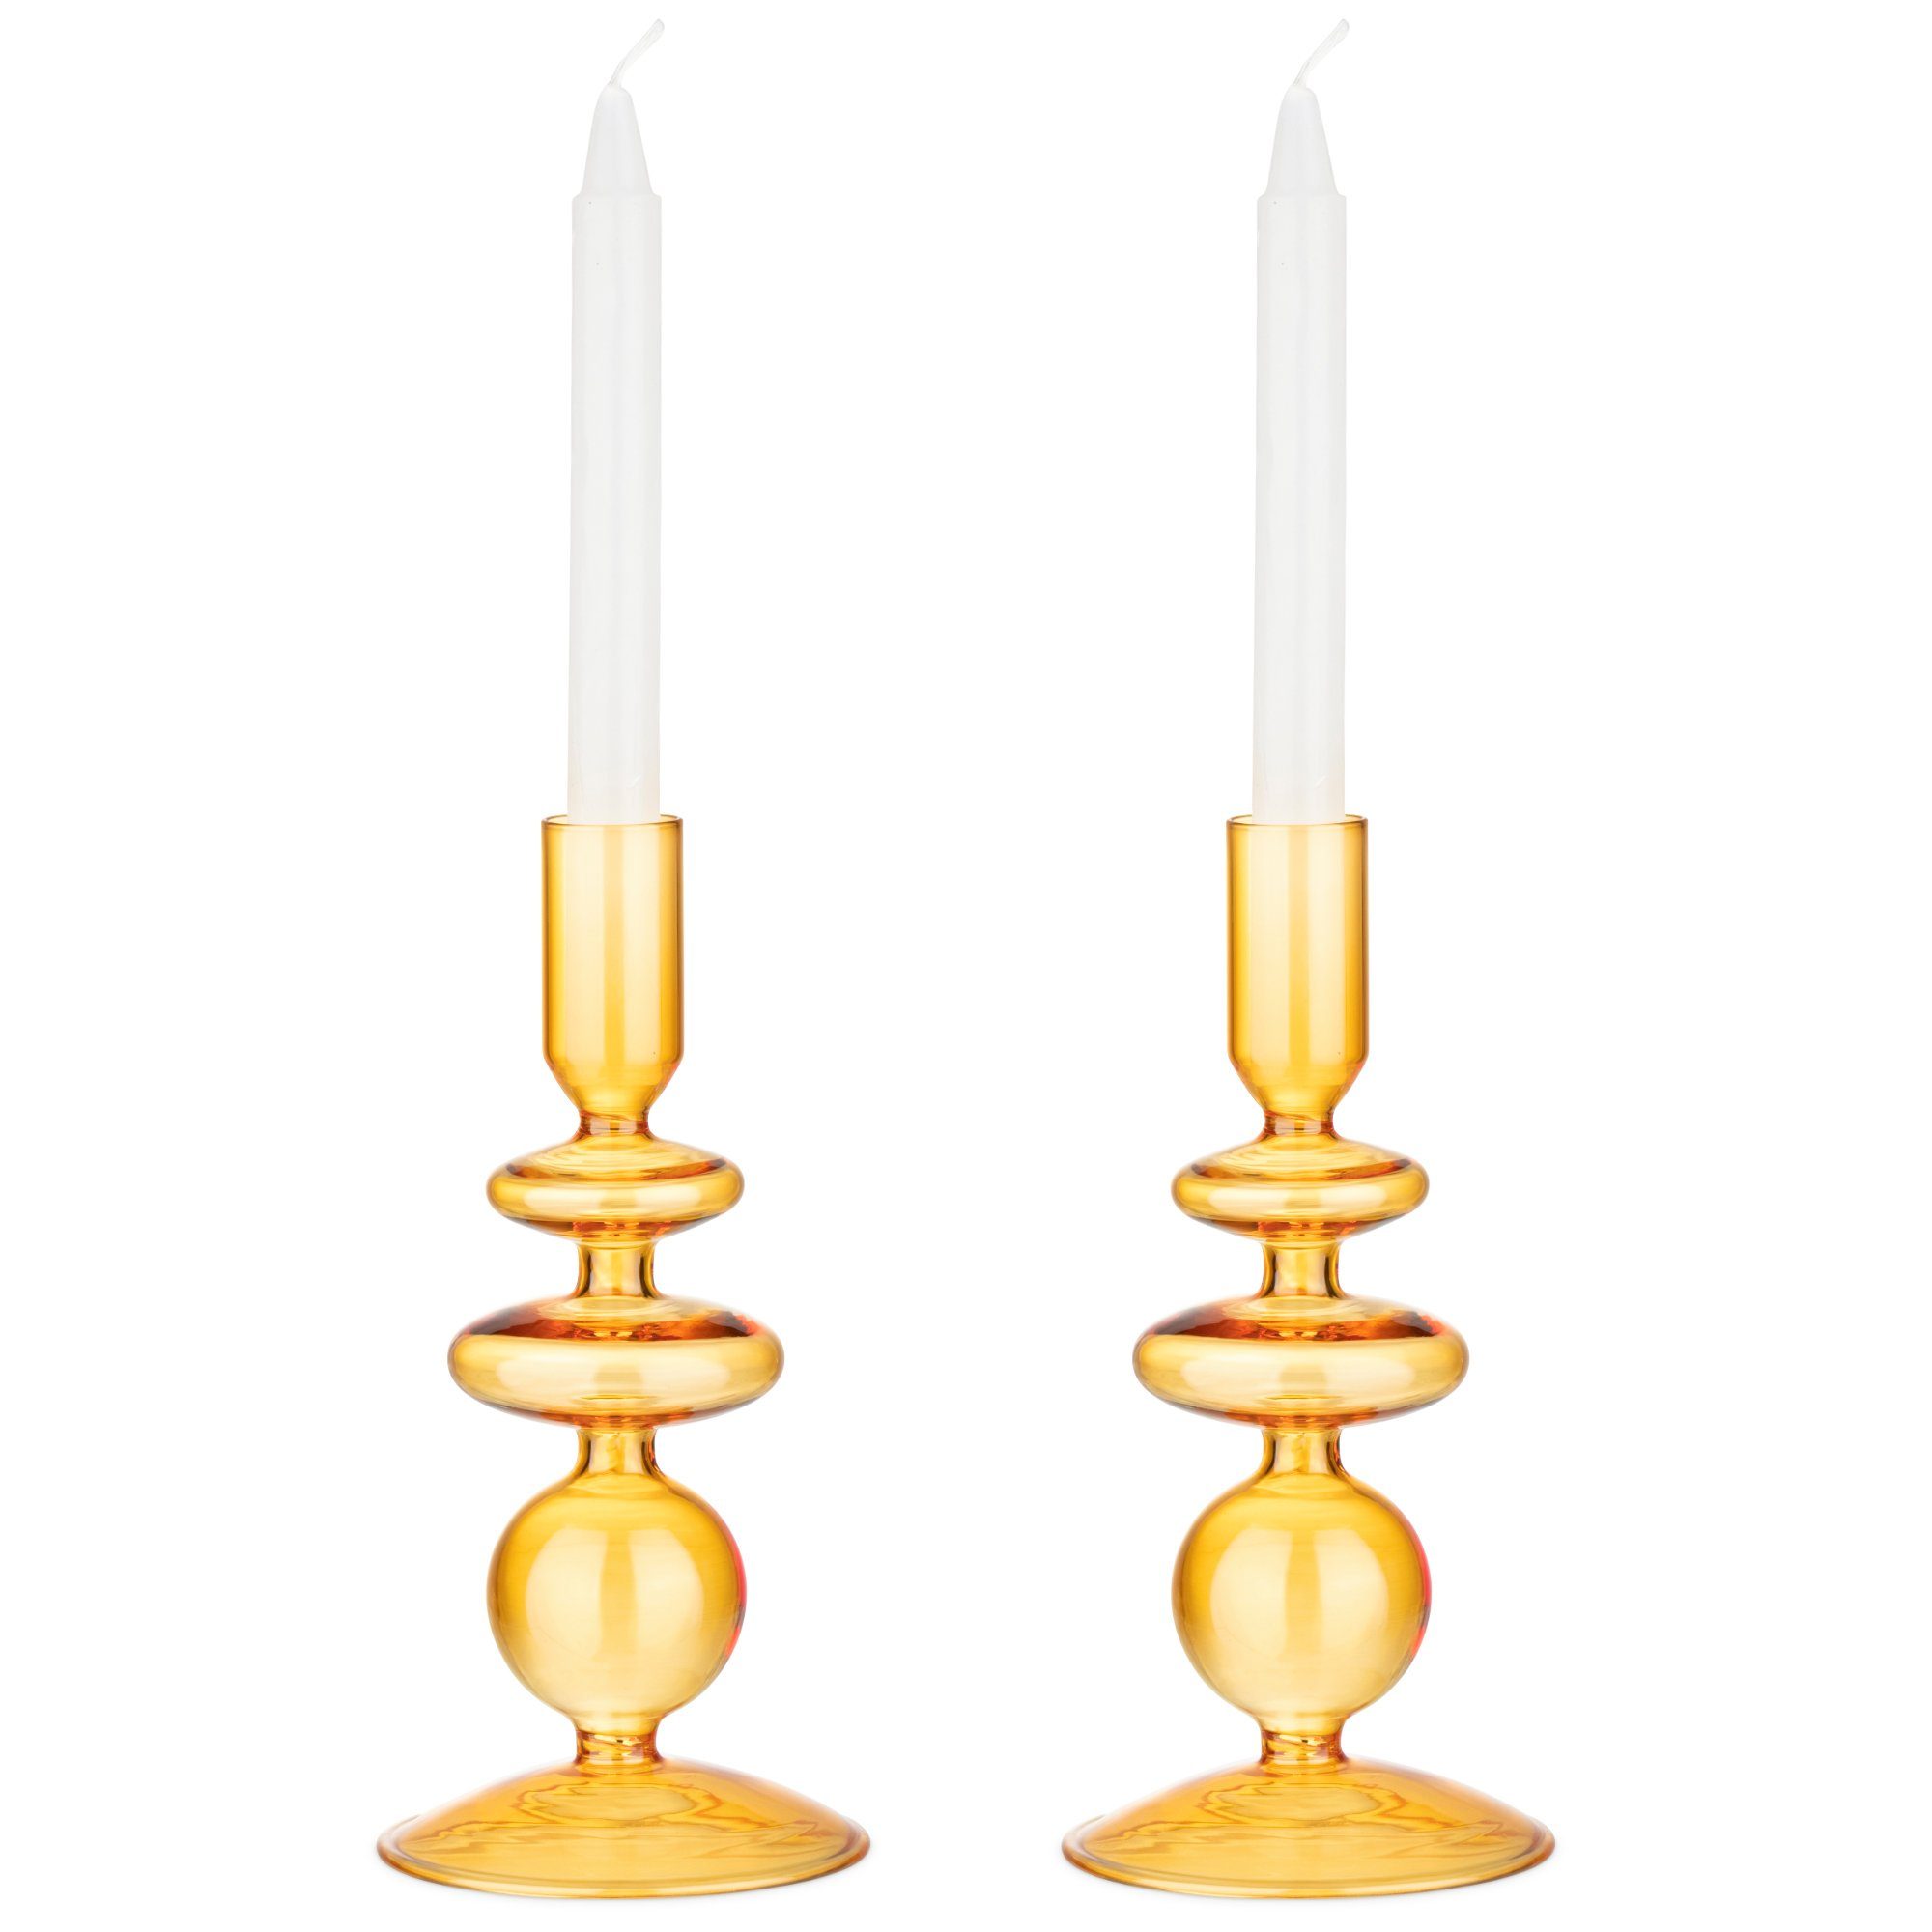 Navaris Kerzenständer 2x Glas-Kerzenhalter für Stabkerzen - Kerzenständer Glas Stabkerzen Orange